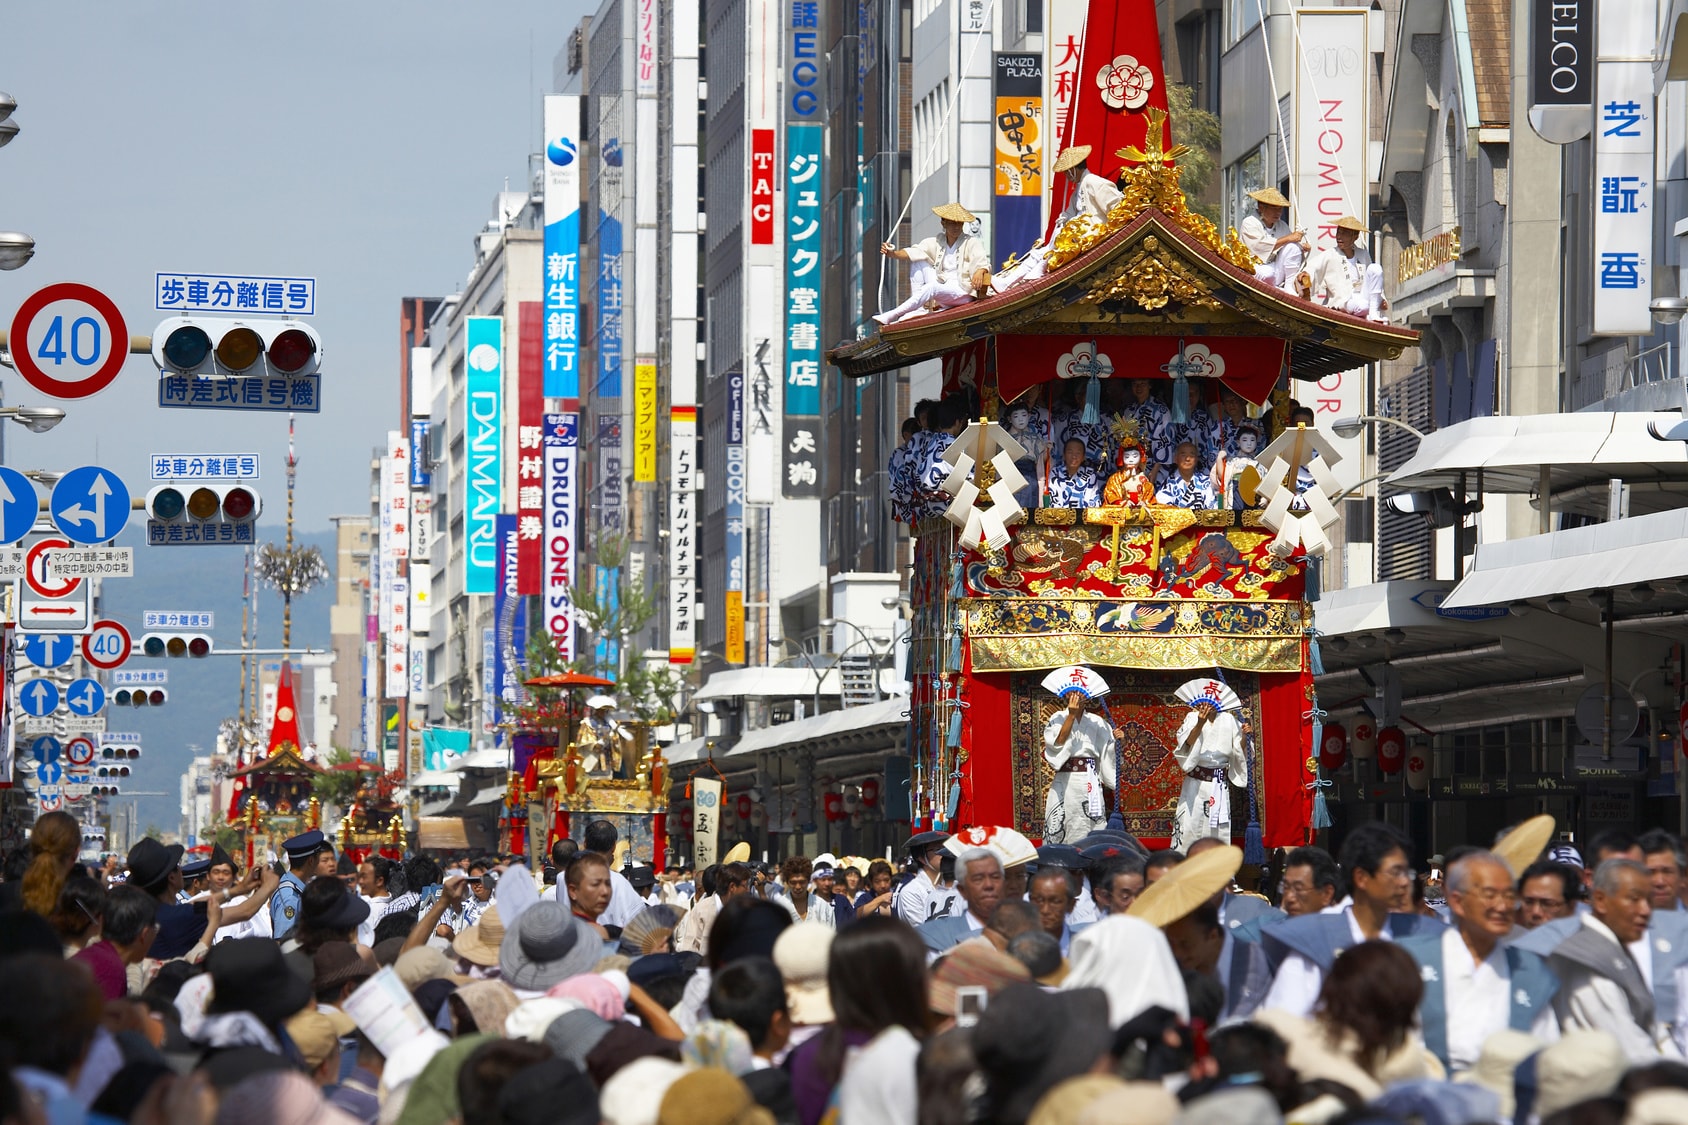 日本の祭りとは 伝統文化から三大祭りまで解説 にほんご日和